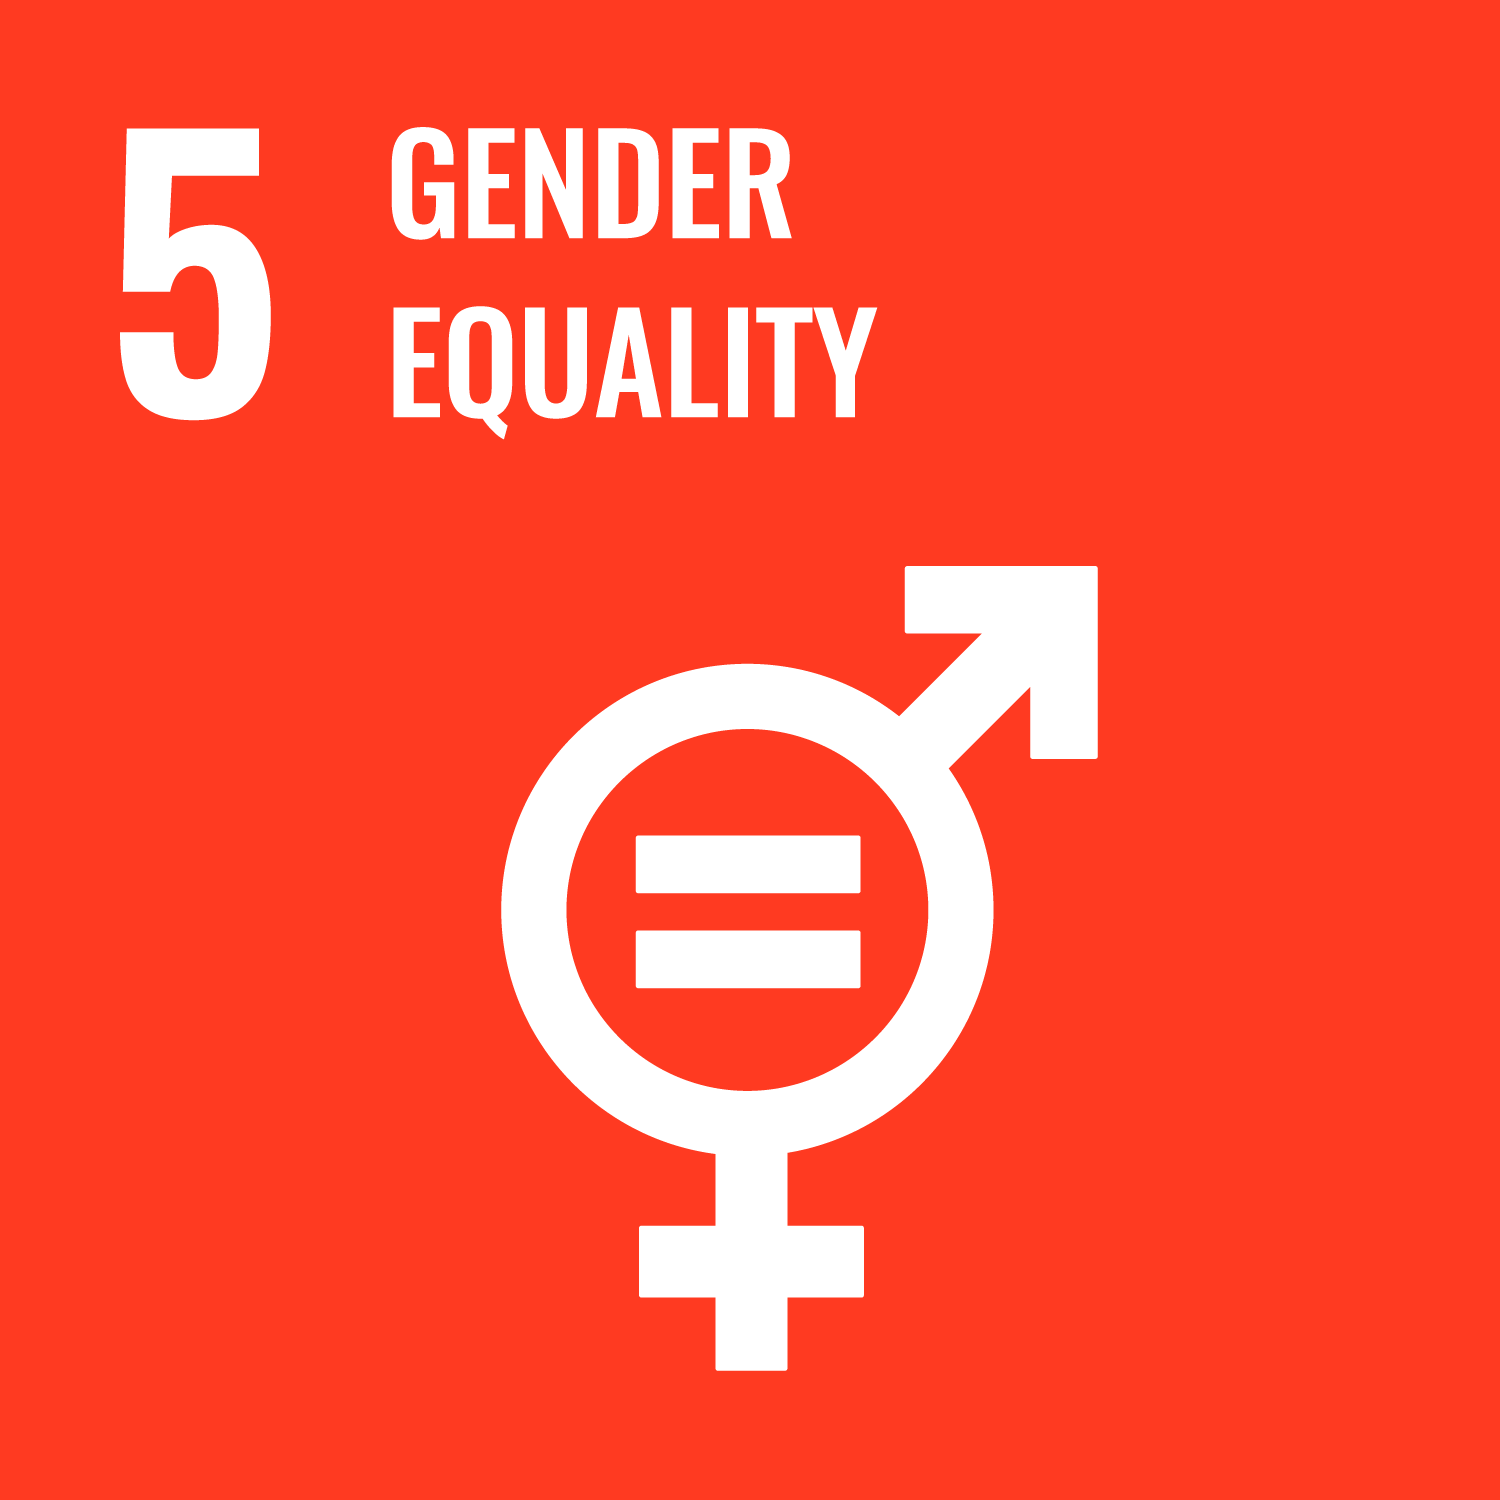 United Nations SDG goal for Gender Equality